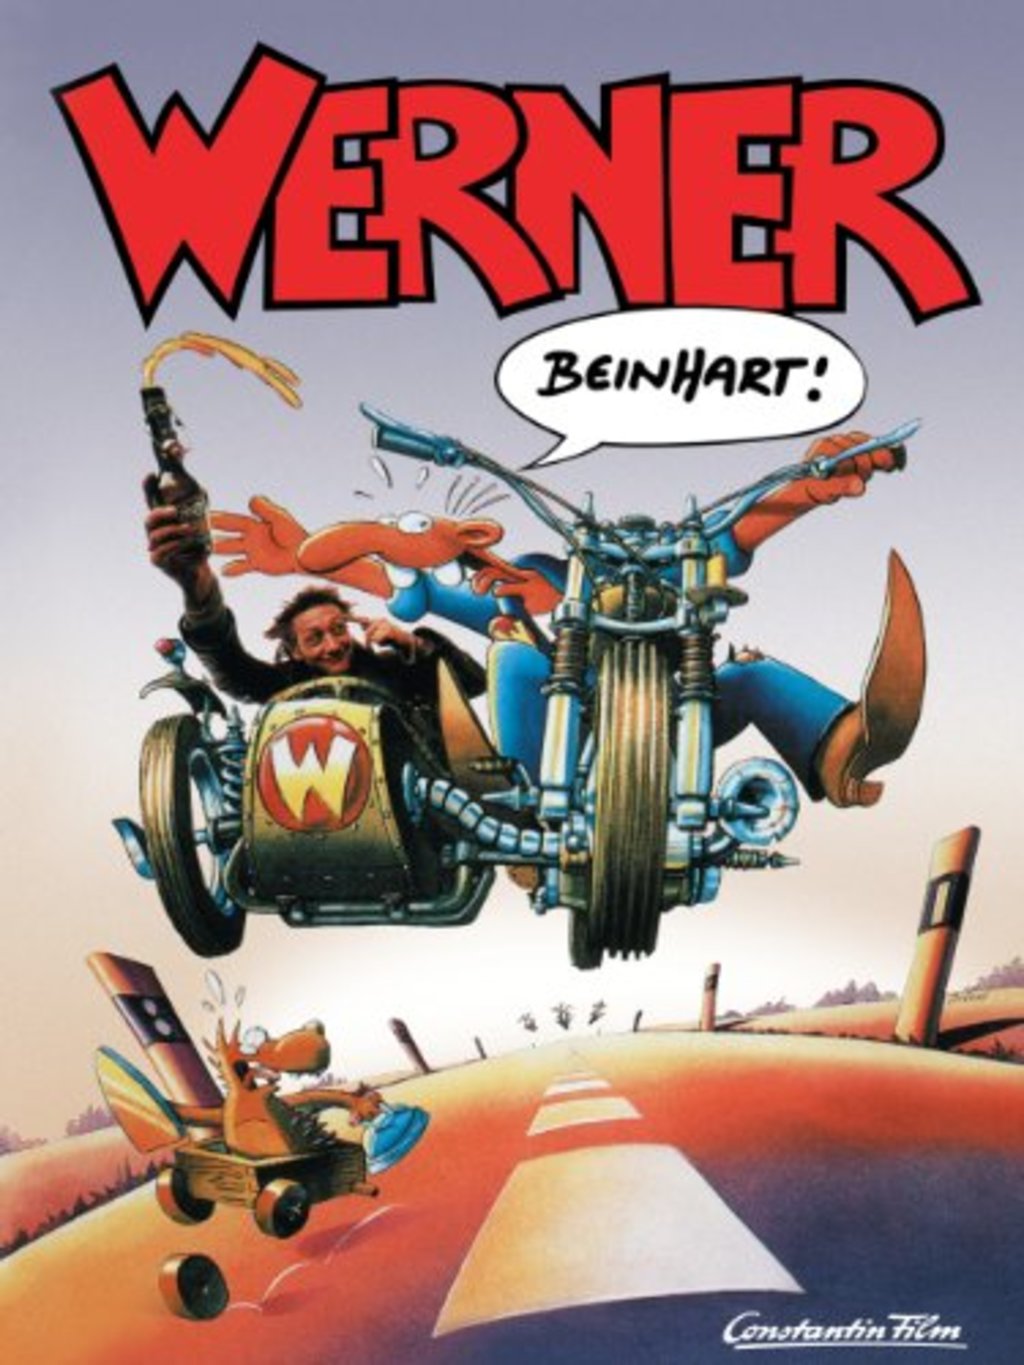 Watch Werner - Beinhart! on Netflix Today! | NetflixMovies.com